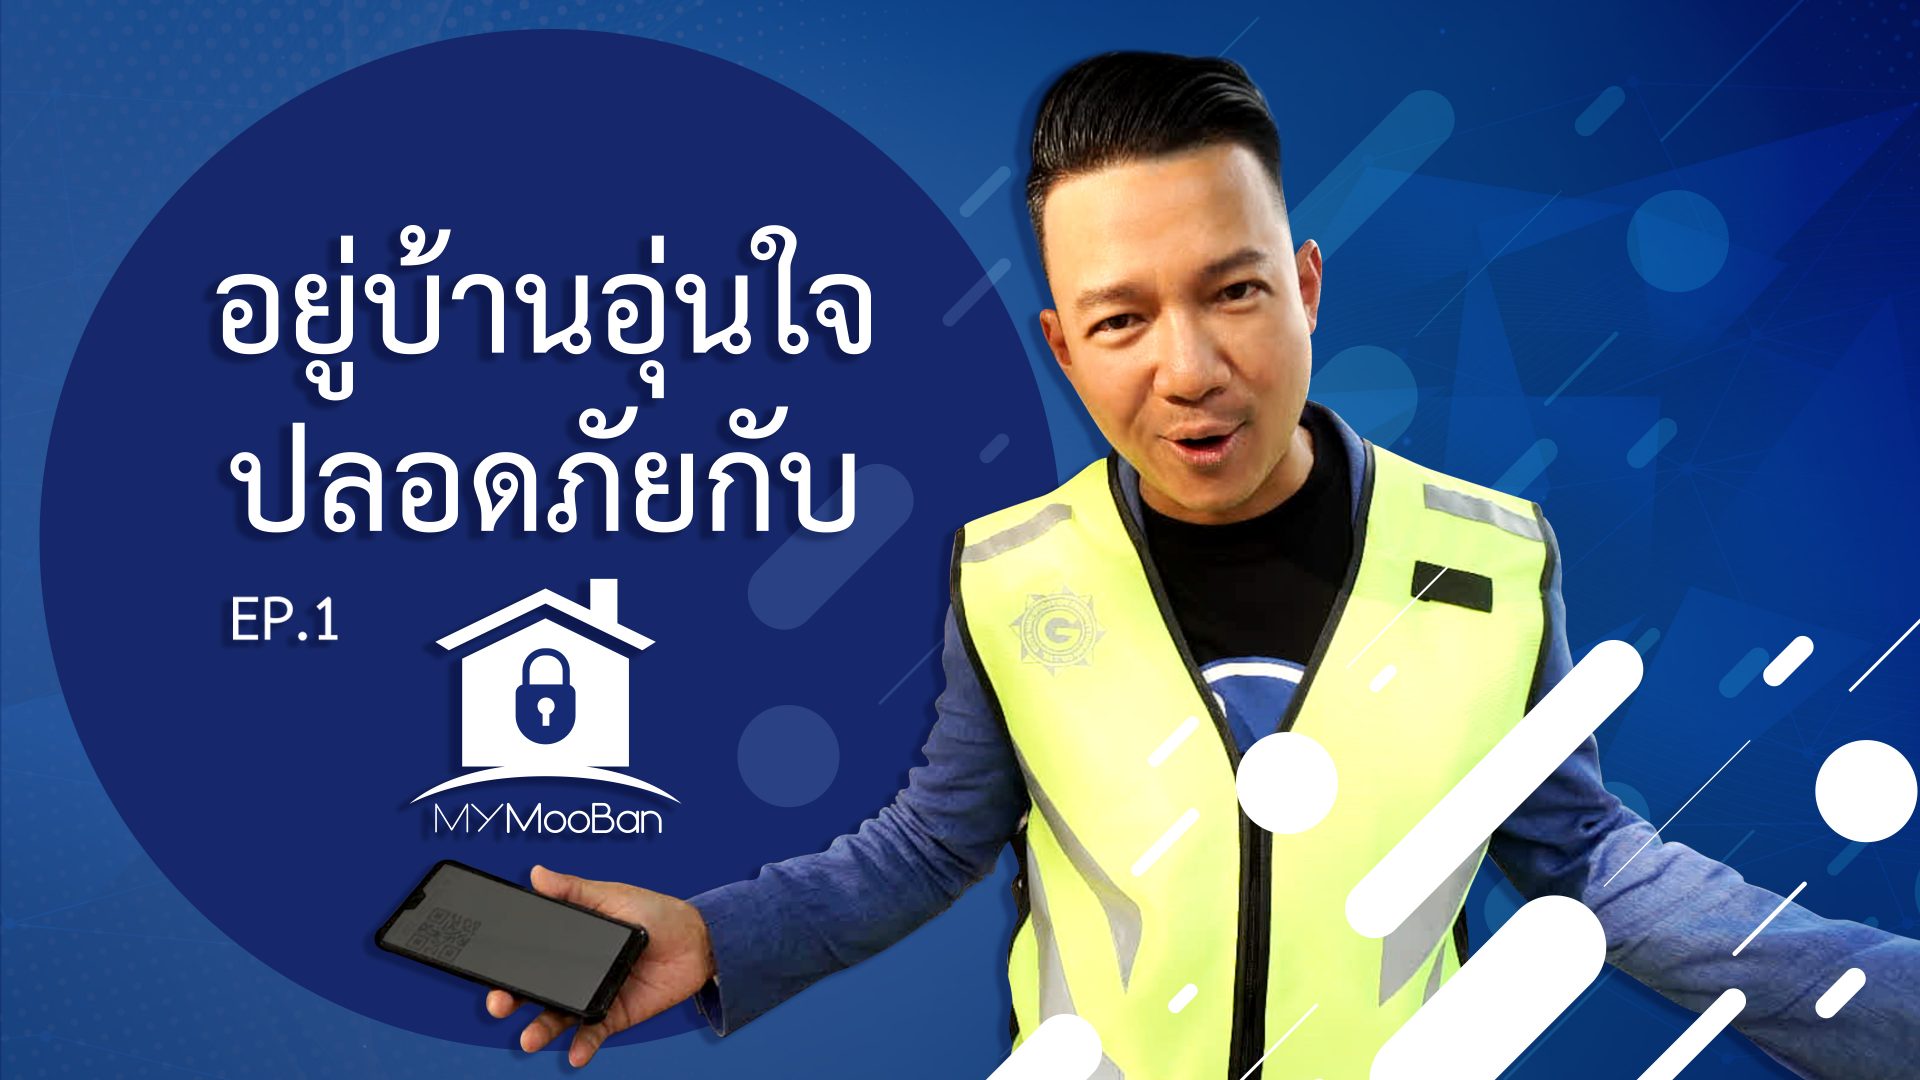 อยู่บ้านอุ่นใจ ปลอดภัยกับ #MyMooBan Application (ความปลอดภัย)